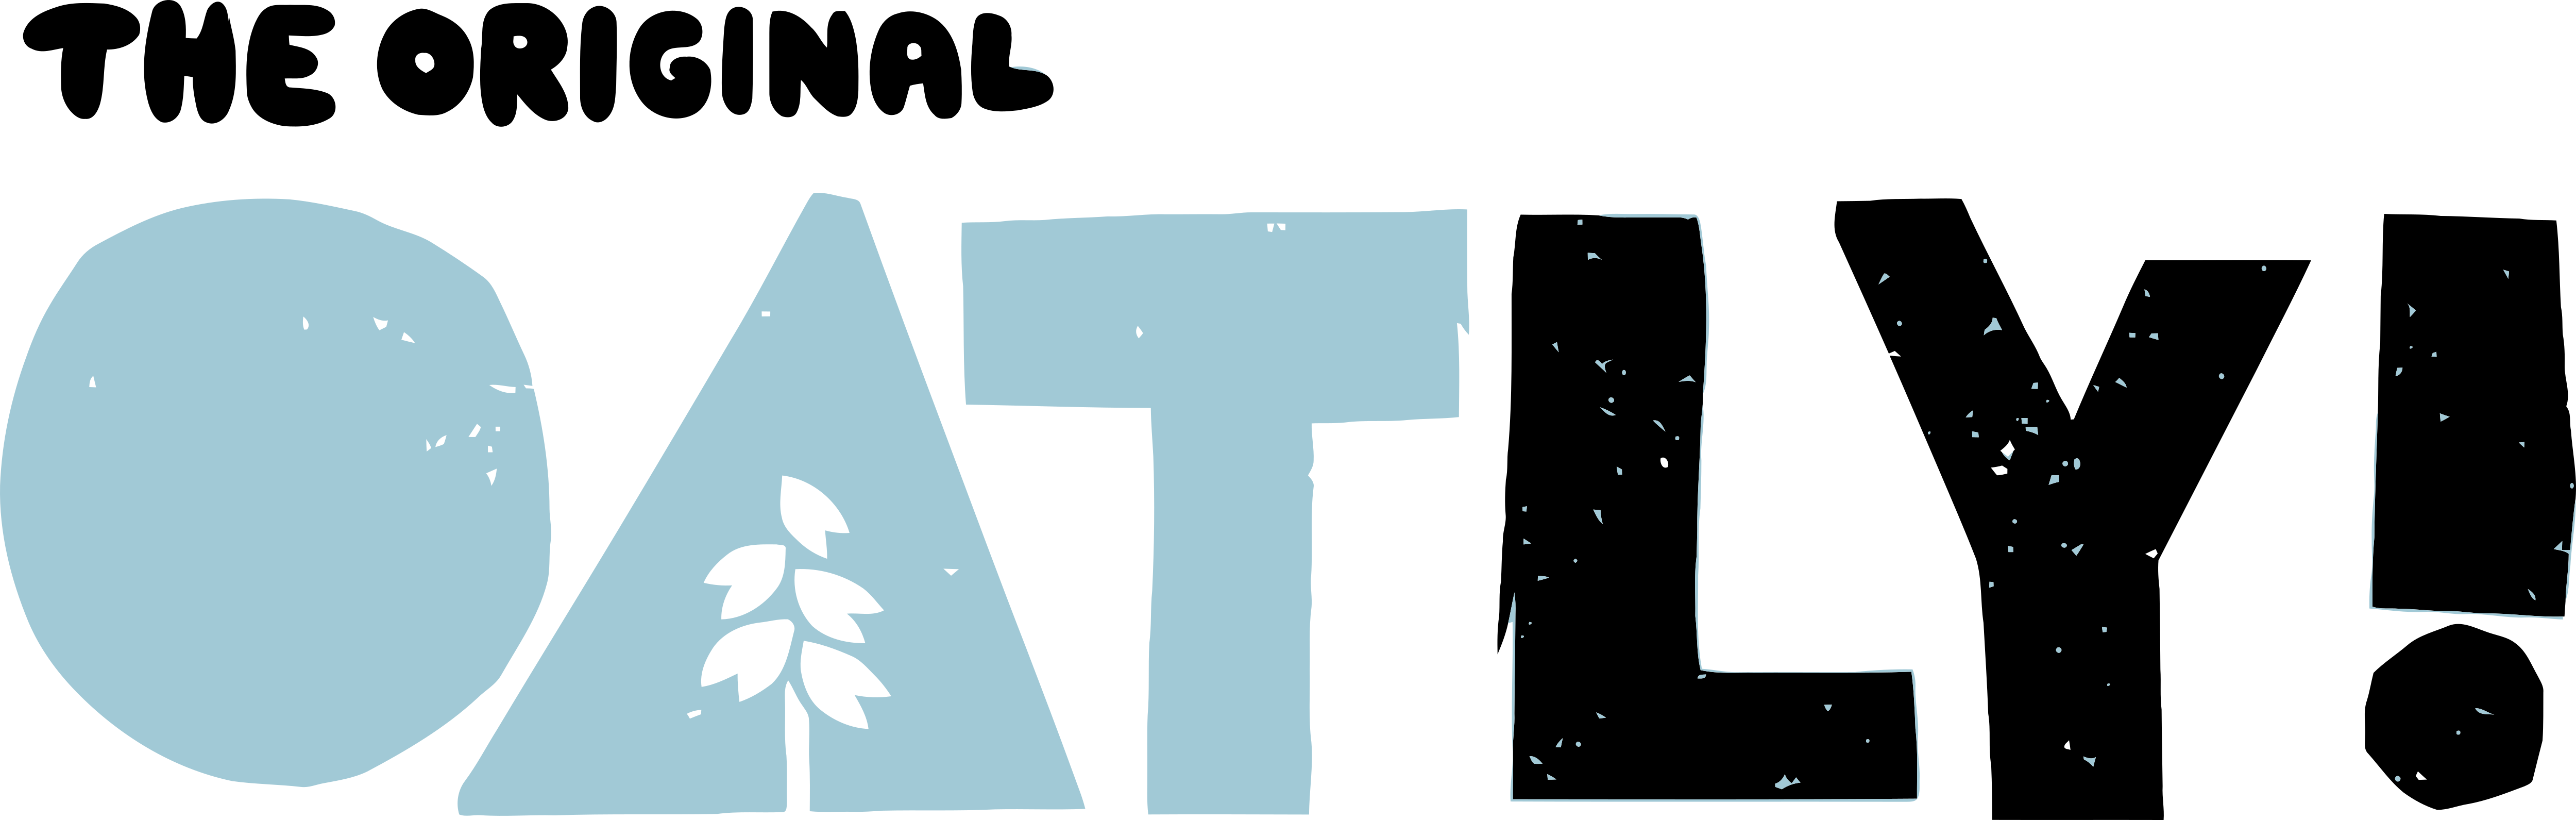 Logo der Marke Oatly